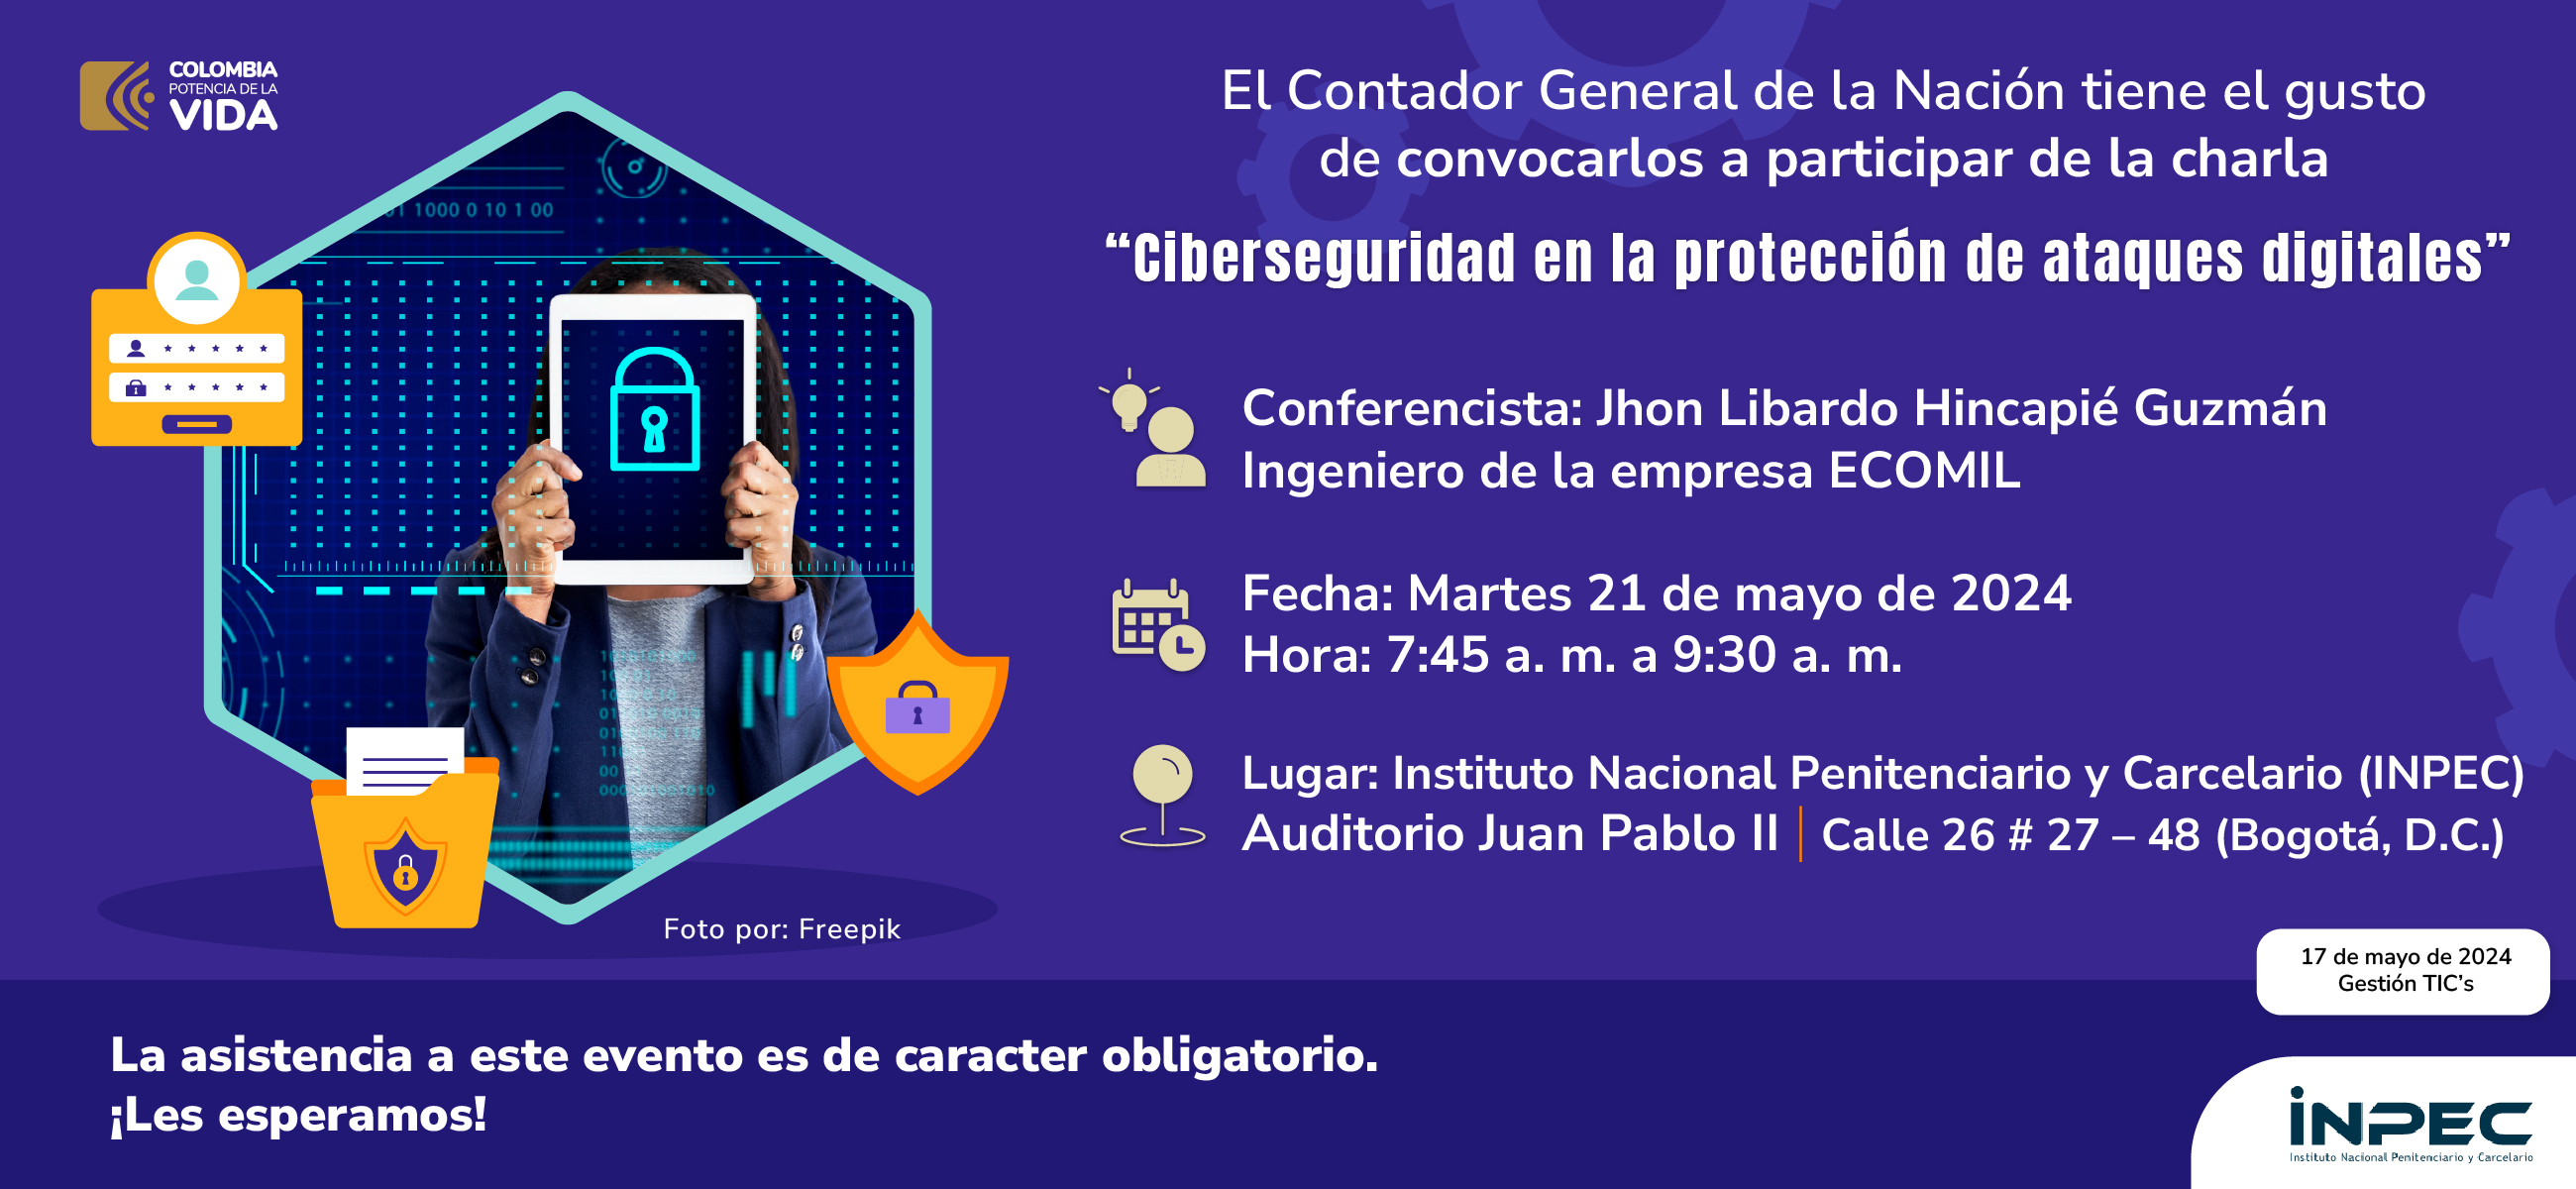 Charla “Ciberseguridad en la protección de ataques digitales”